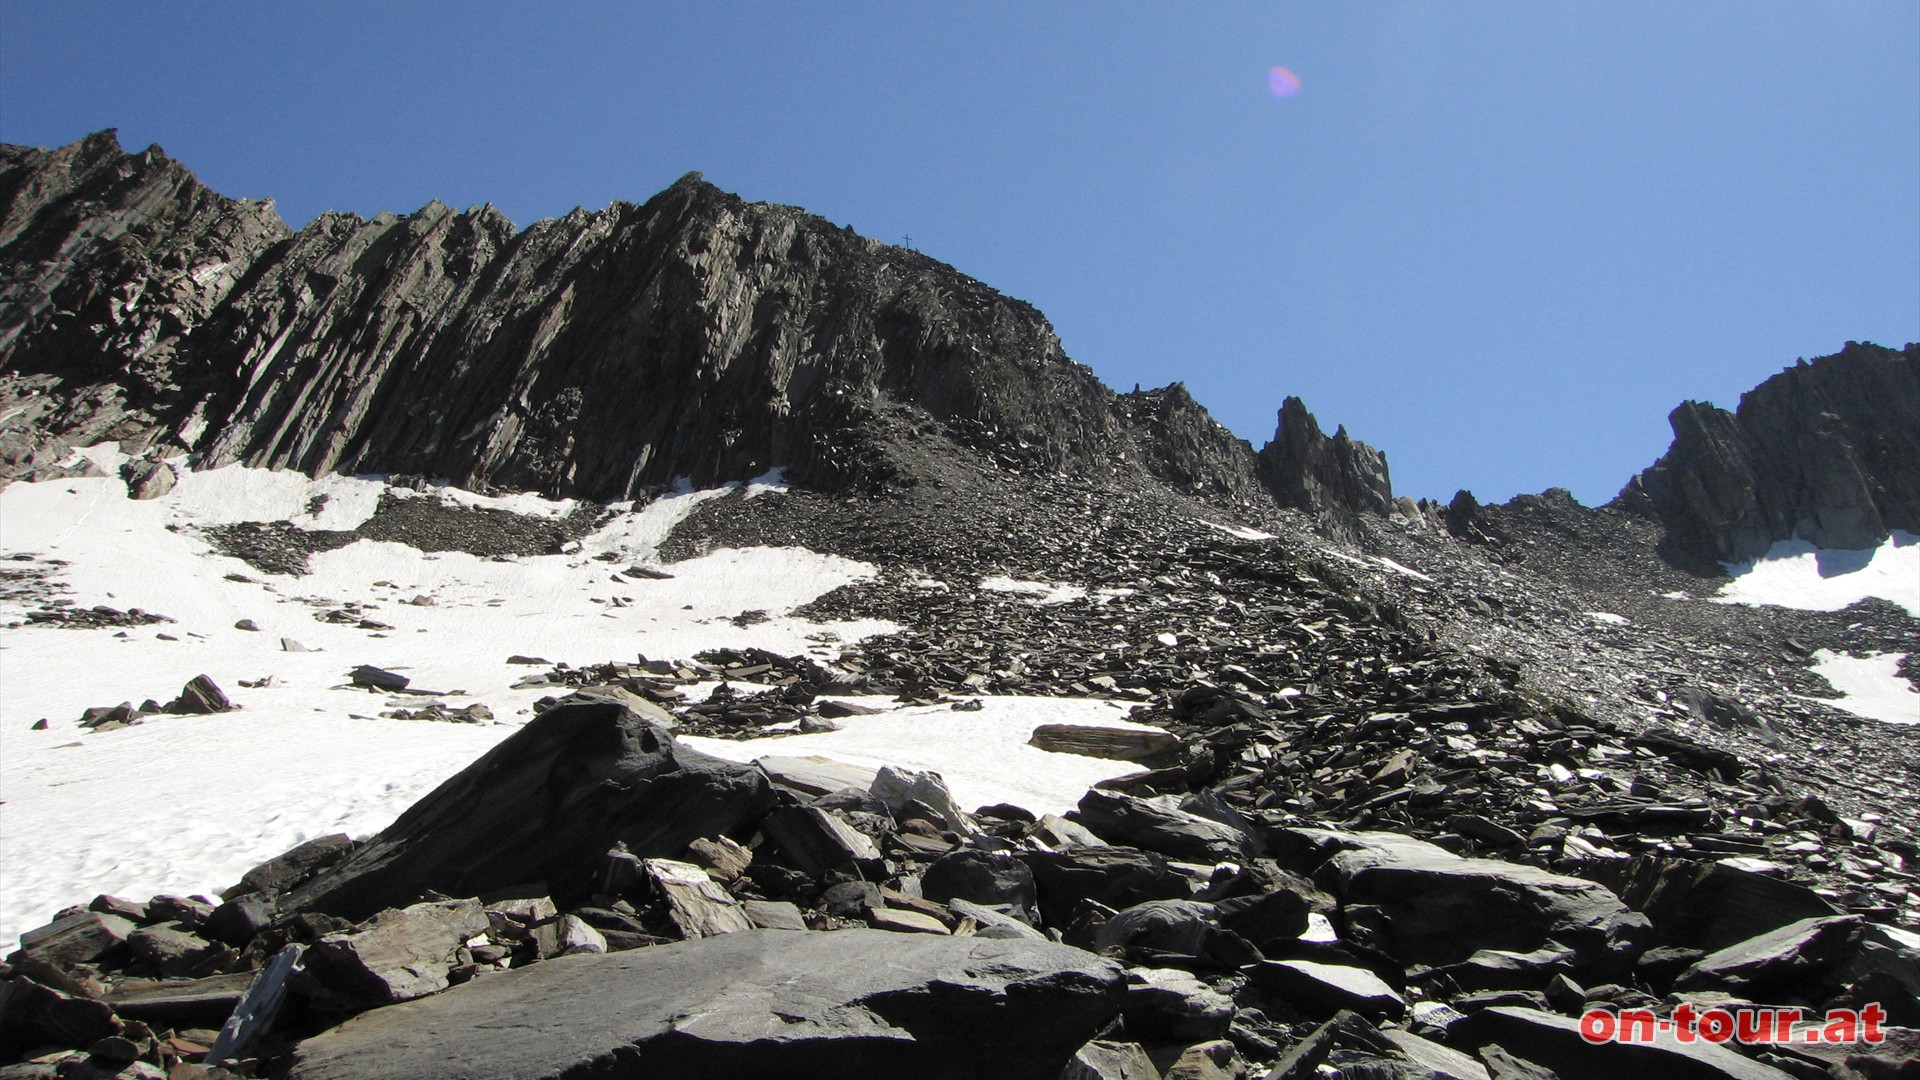 An der Westflanke des Schnbichlerhorns wird der Weg steiler und steiniger. Das Kreuz am Gipfel ist bereits erkennbar.